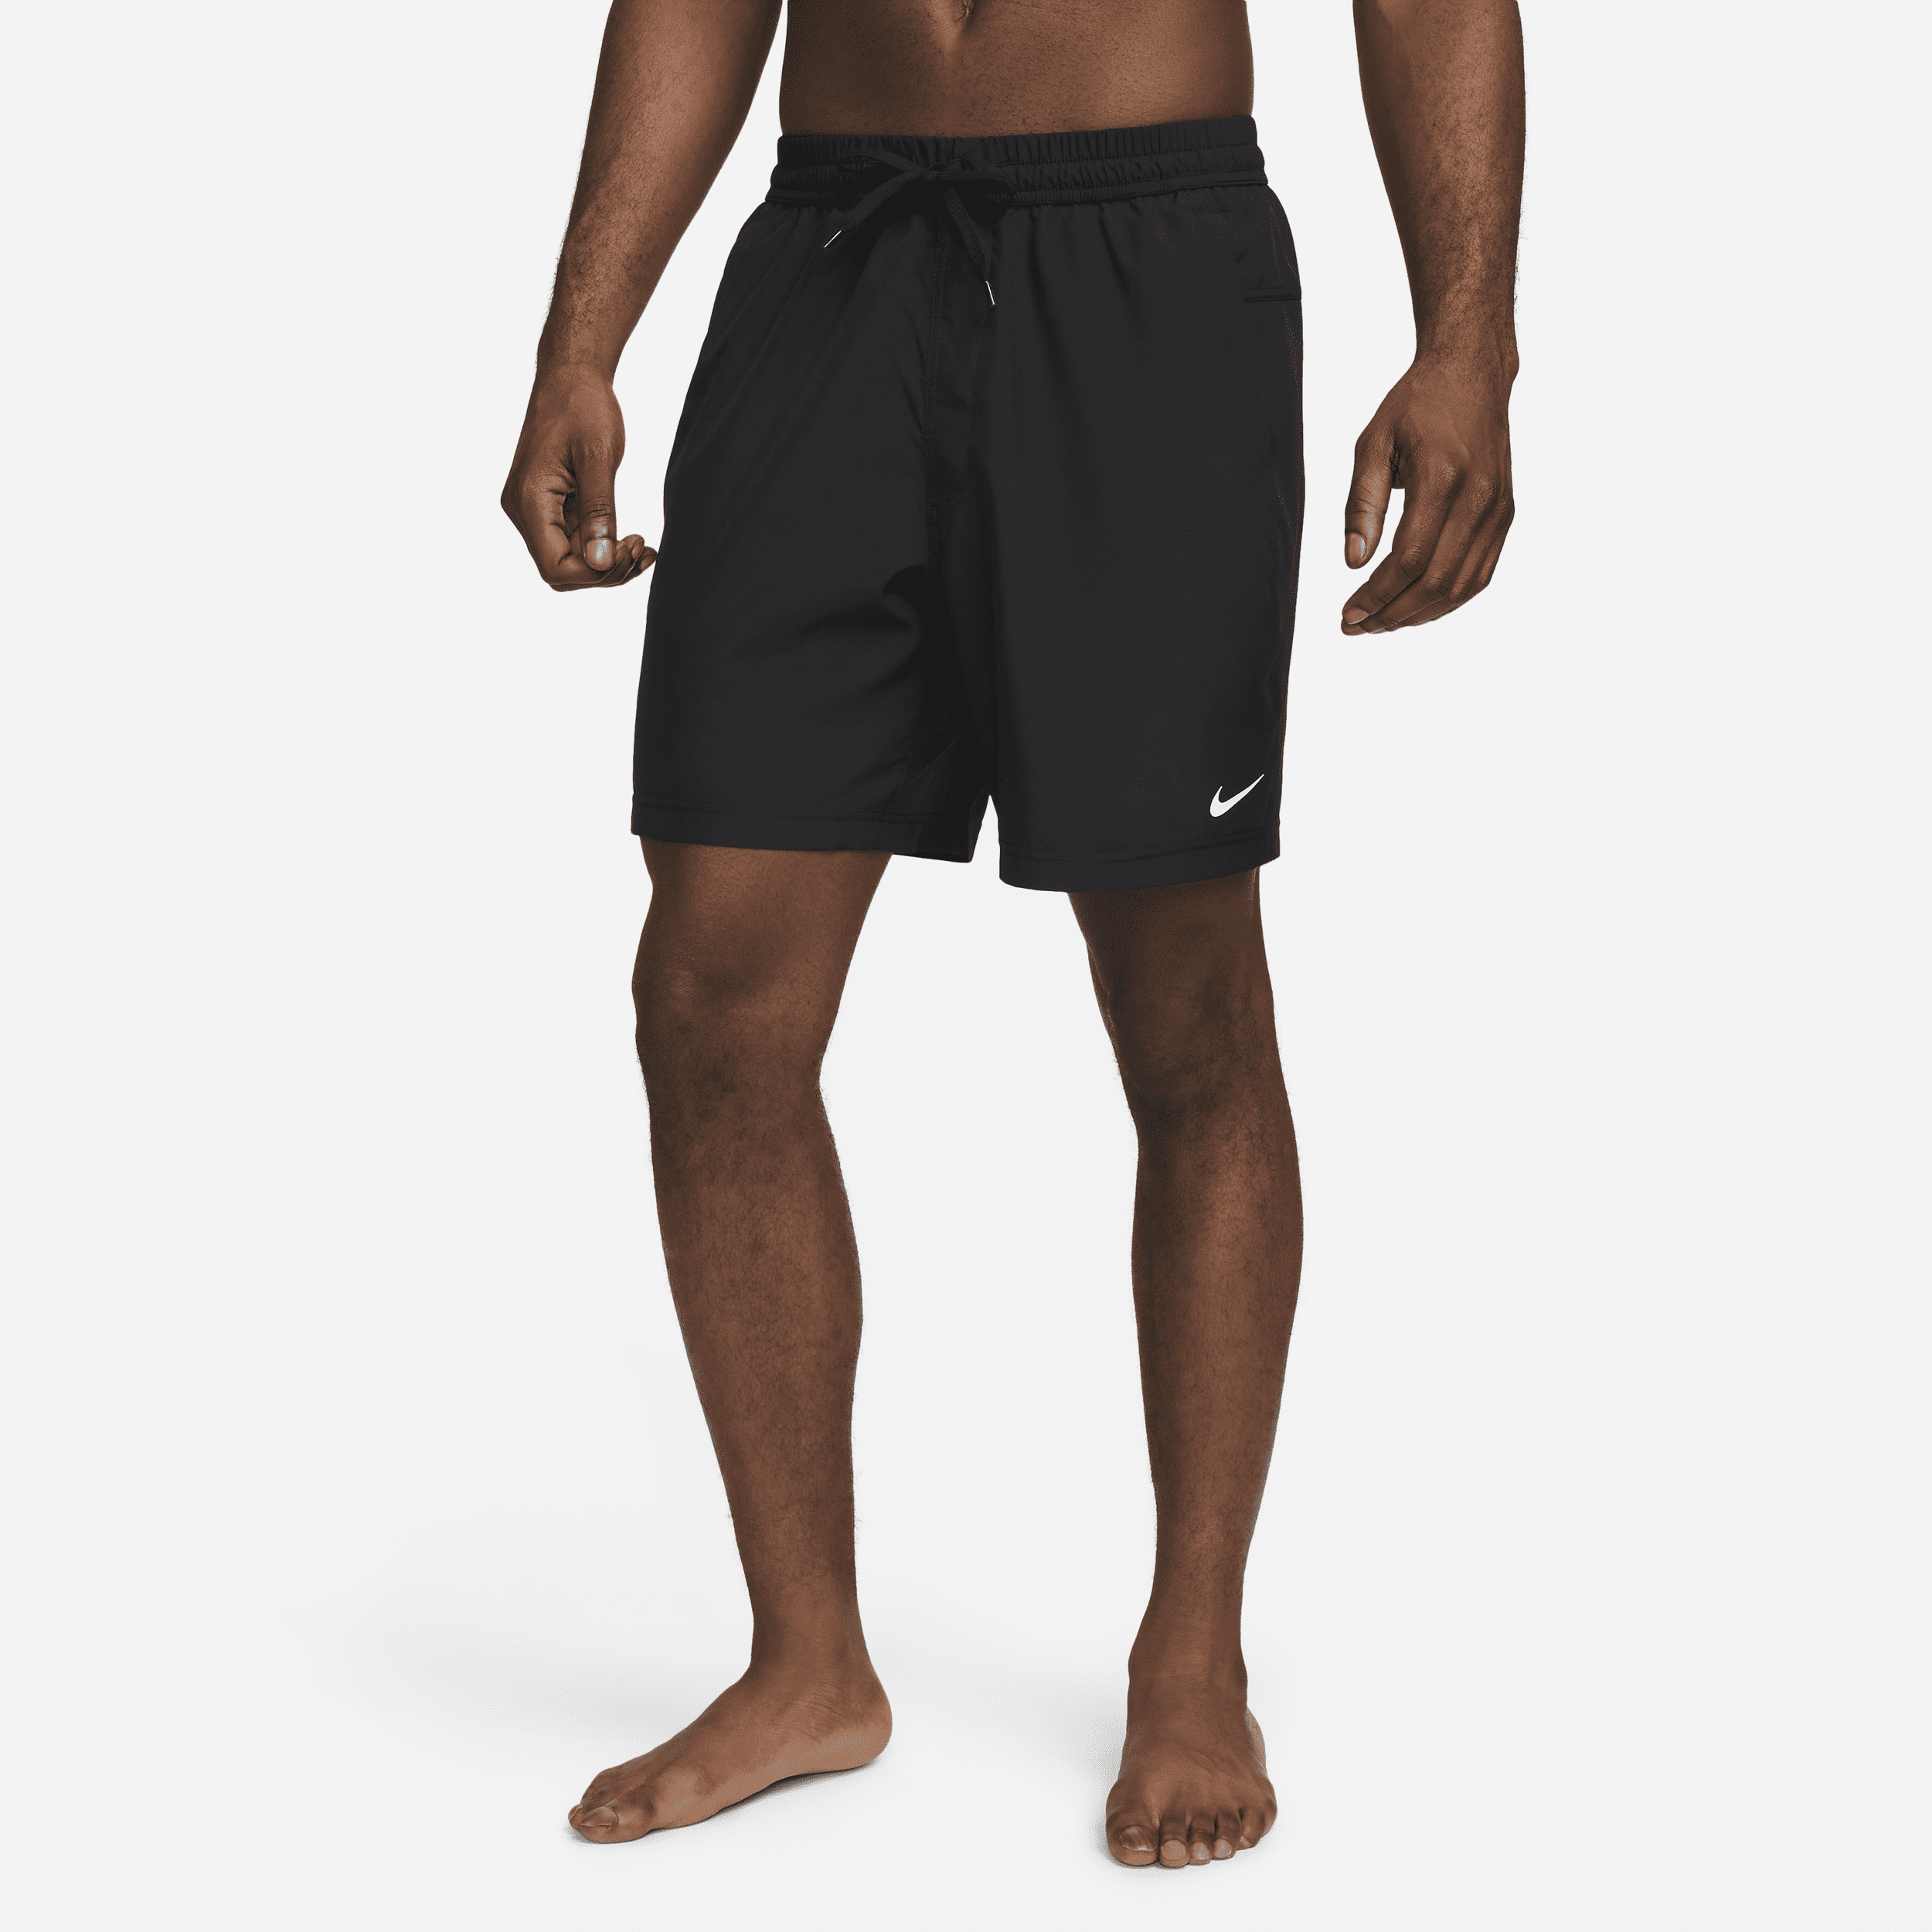 Alsidige Nike Form Dri-FIT-shorts (18 cm) uden for til mænd - sort